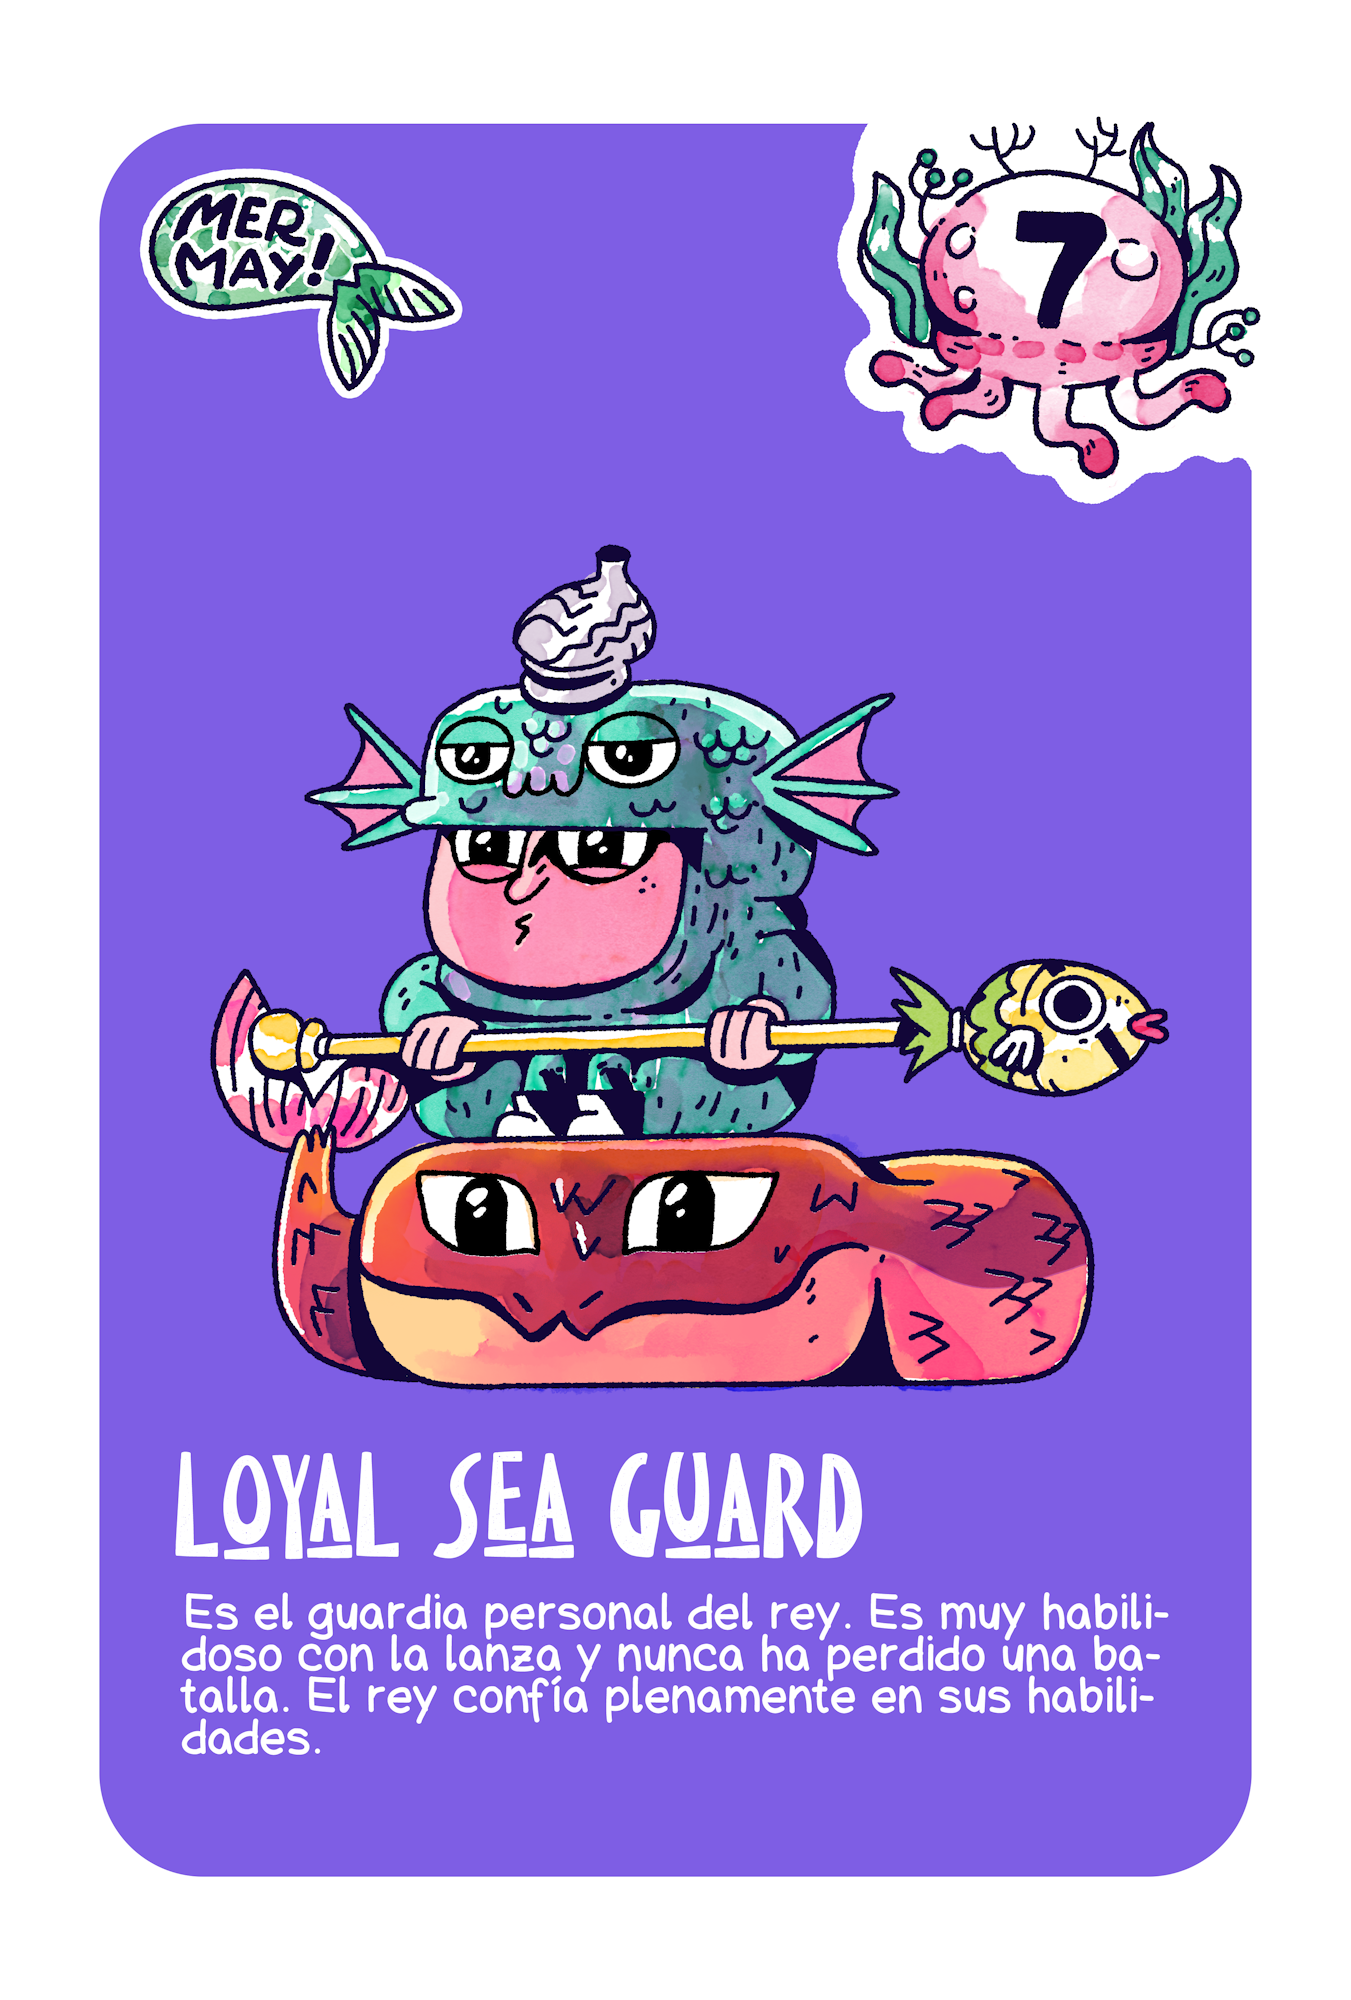 Loyal Sea Guard